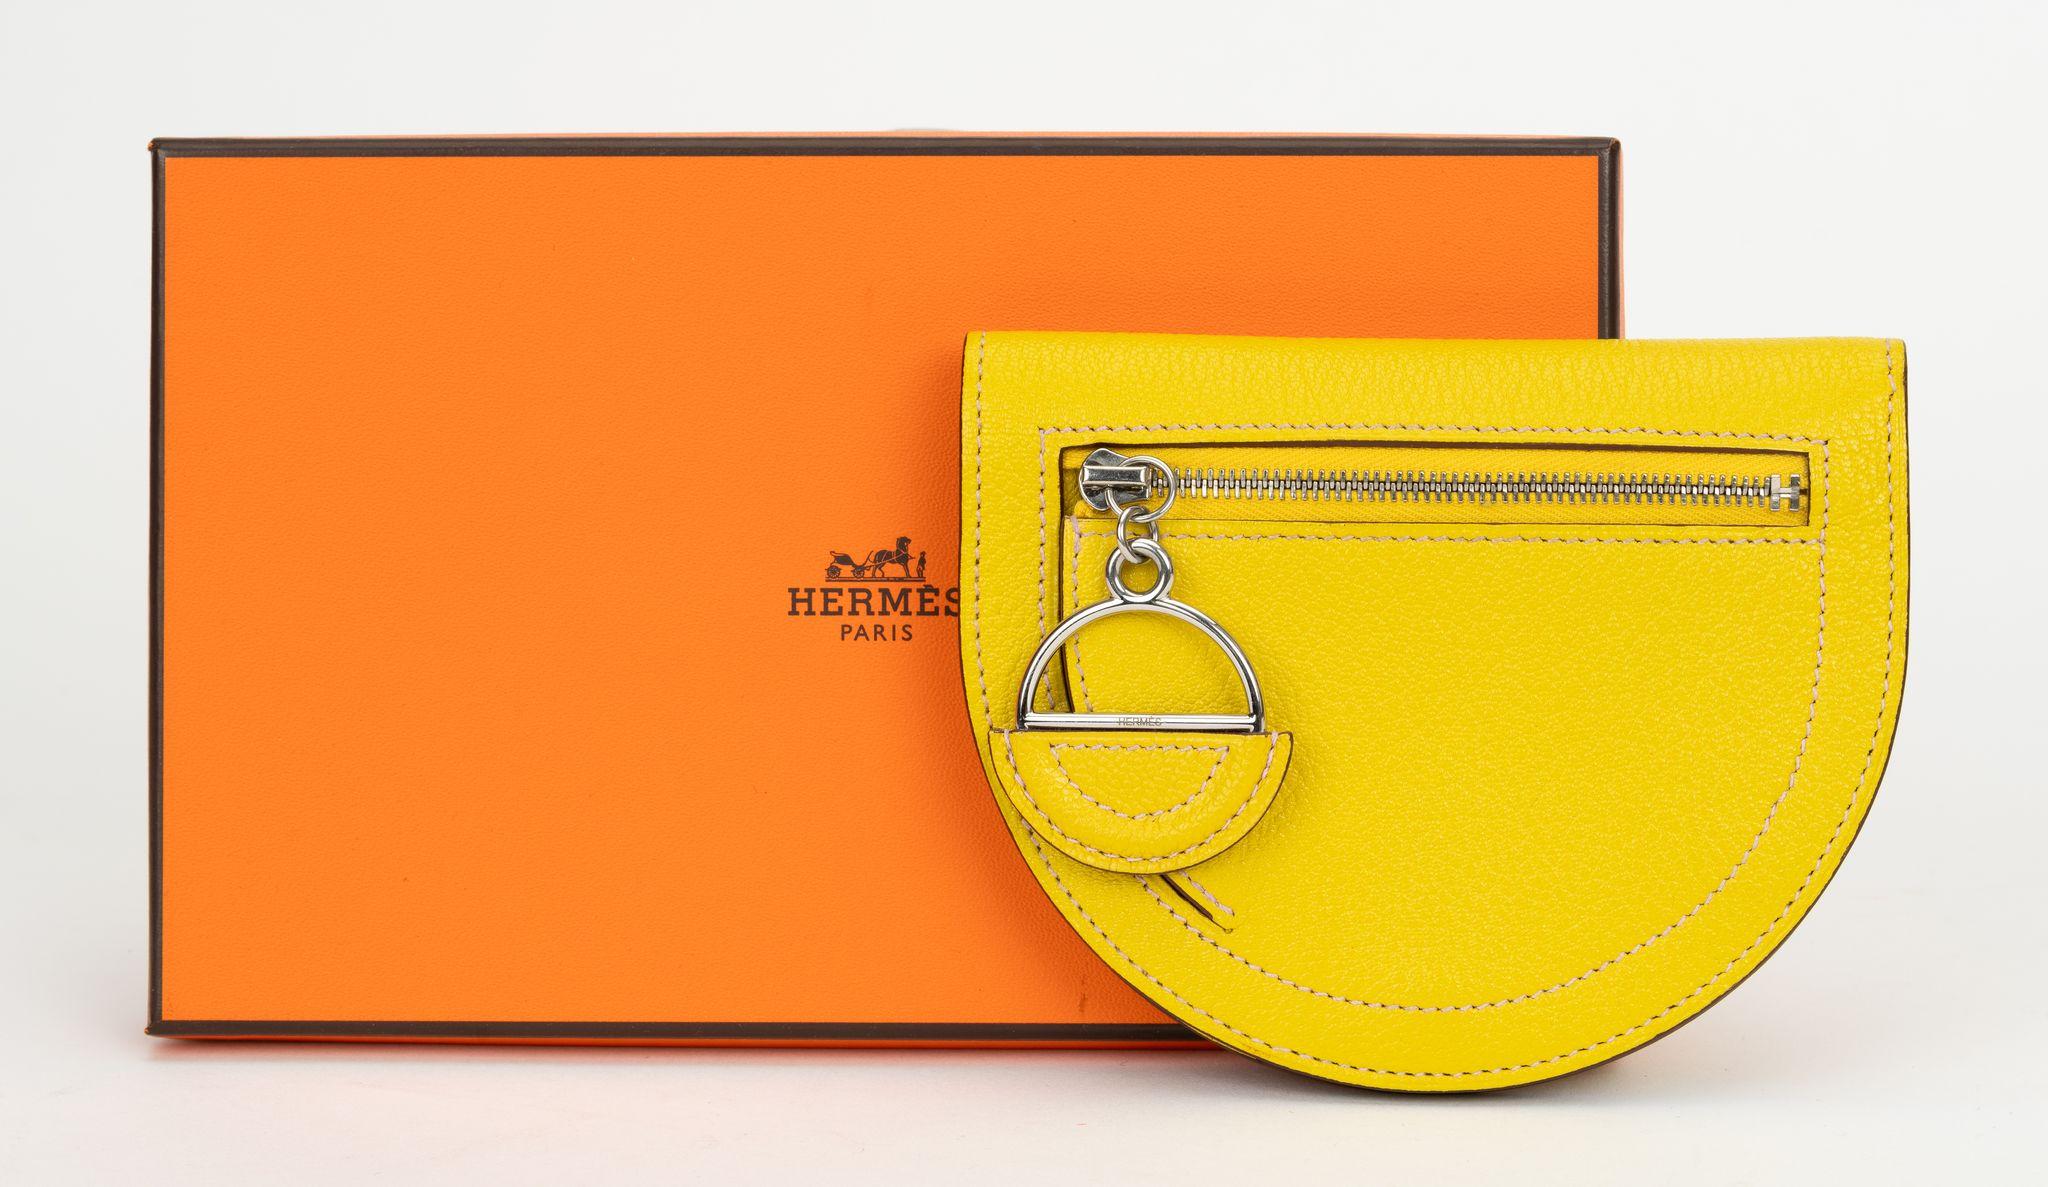 Hermès Chevre Mysore In-The-Loop Compact Wallet in Limettengelb und Weiß. Brandneu mit Originalverpackung.